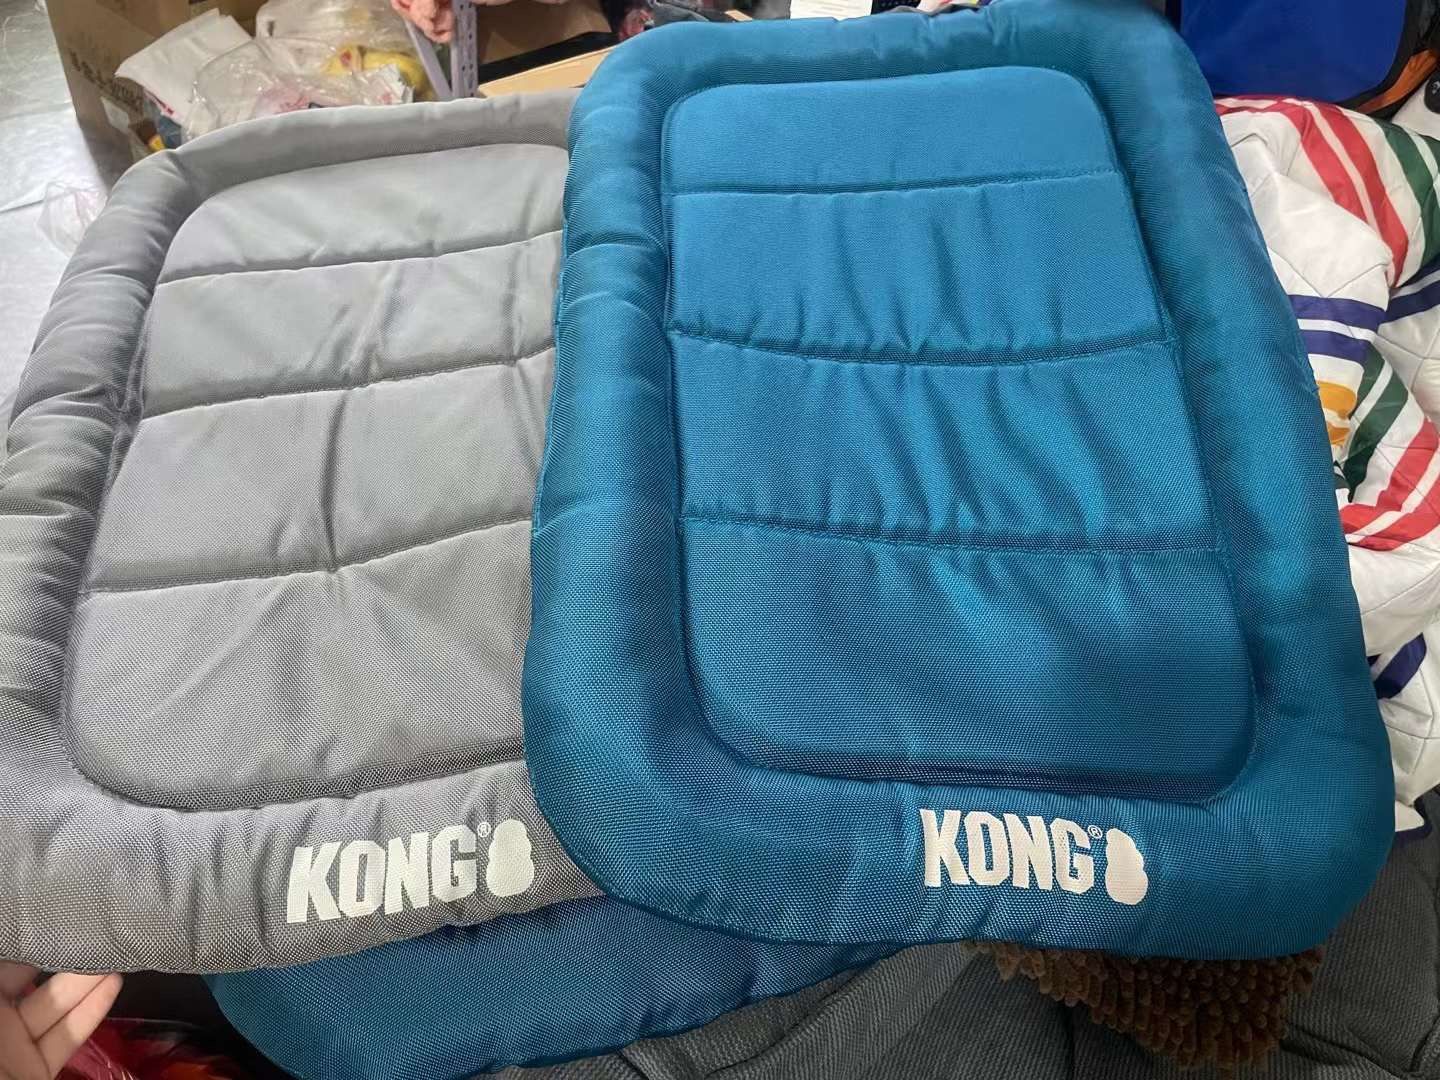 KONG durable crate dog mat